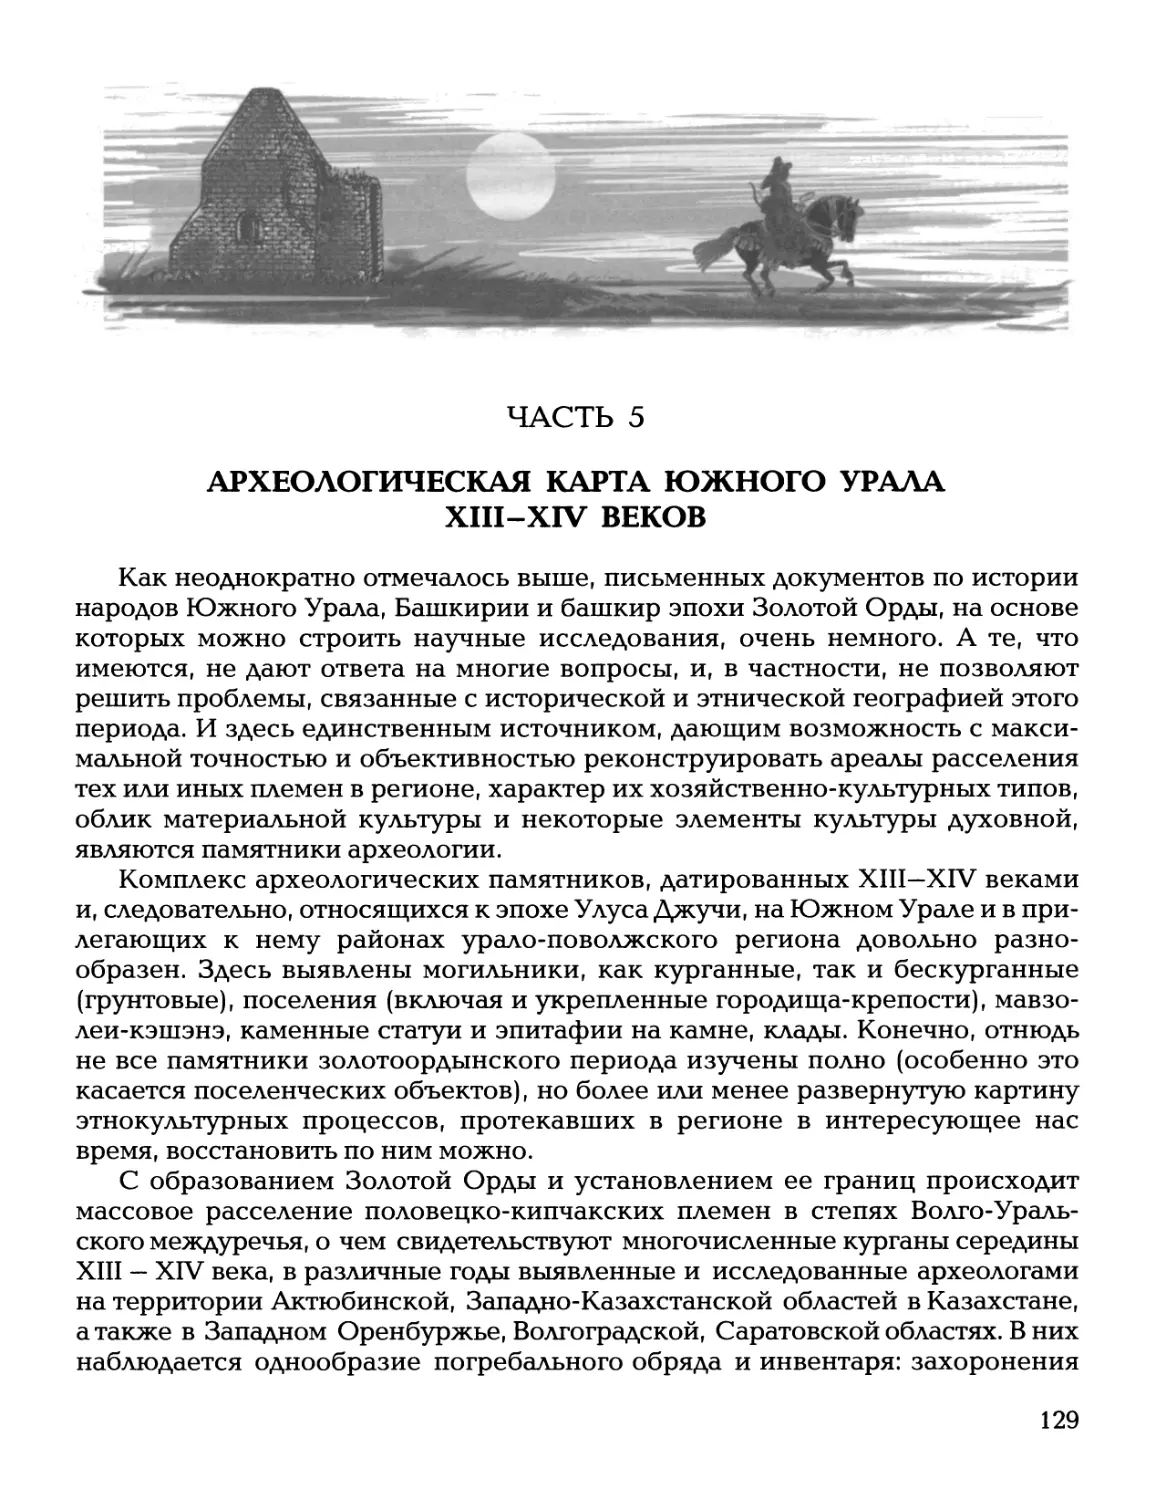 Часть 5. Археологическая карта Южного Урала XIII - XIV веков